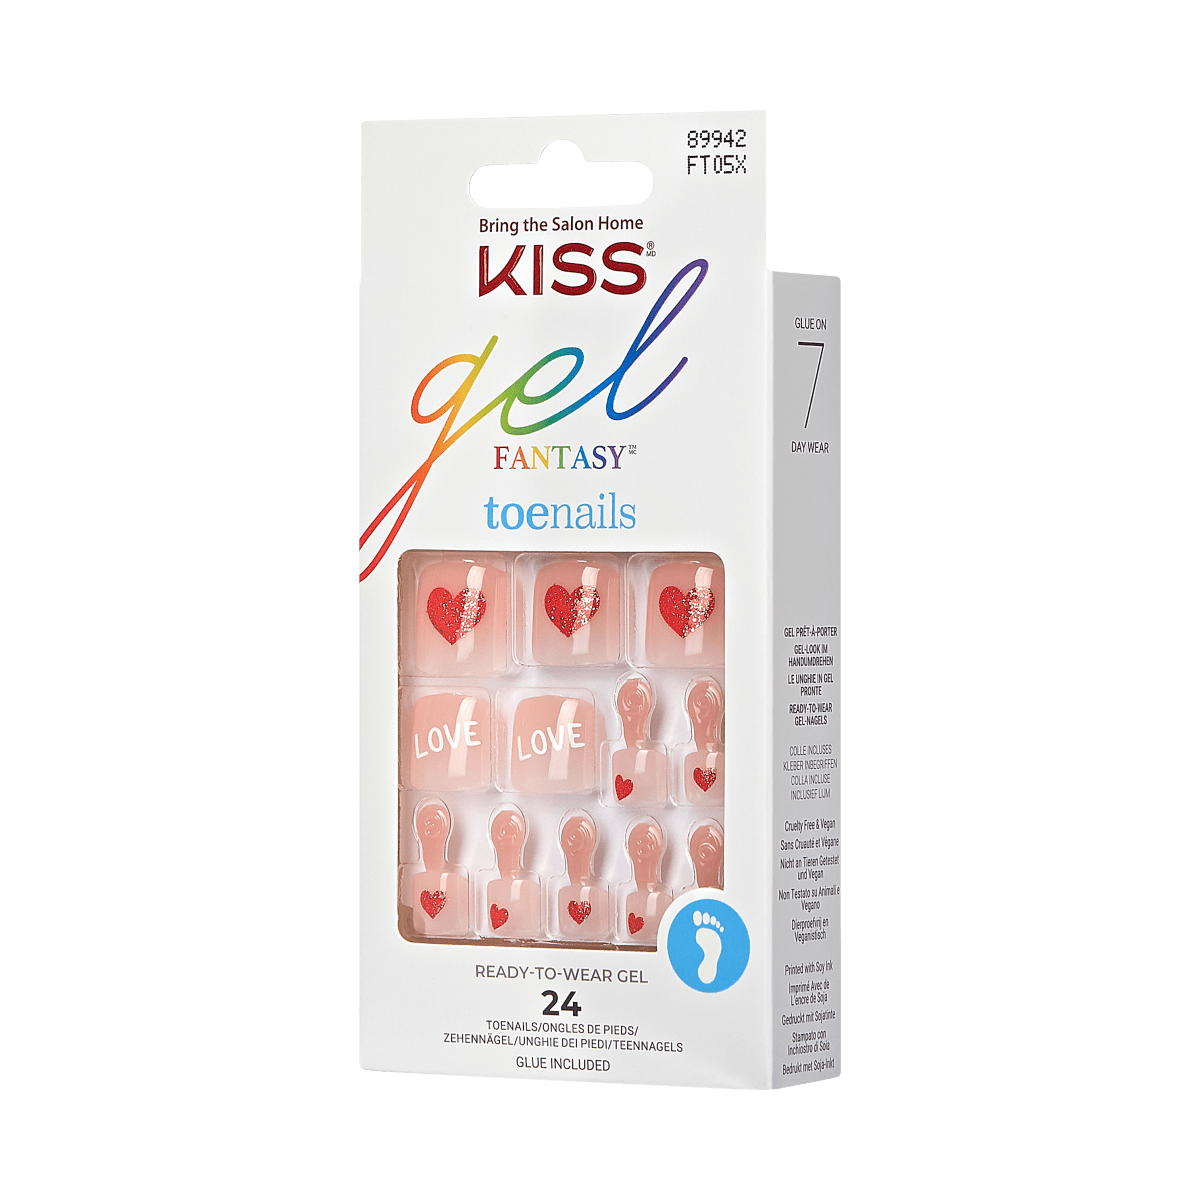 KISS Gel Fantasy Pride Toenails - Love Wins